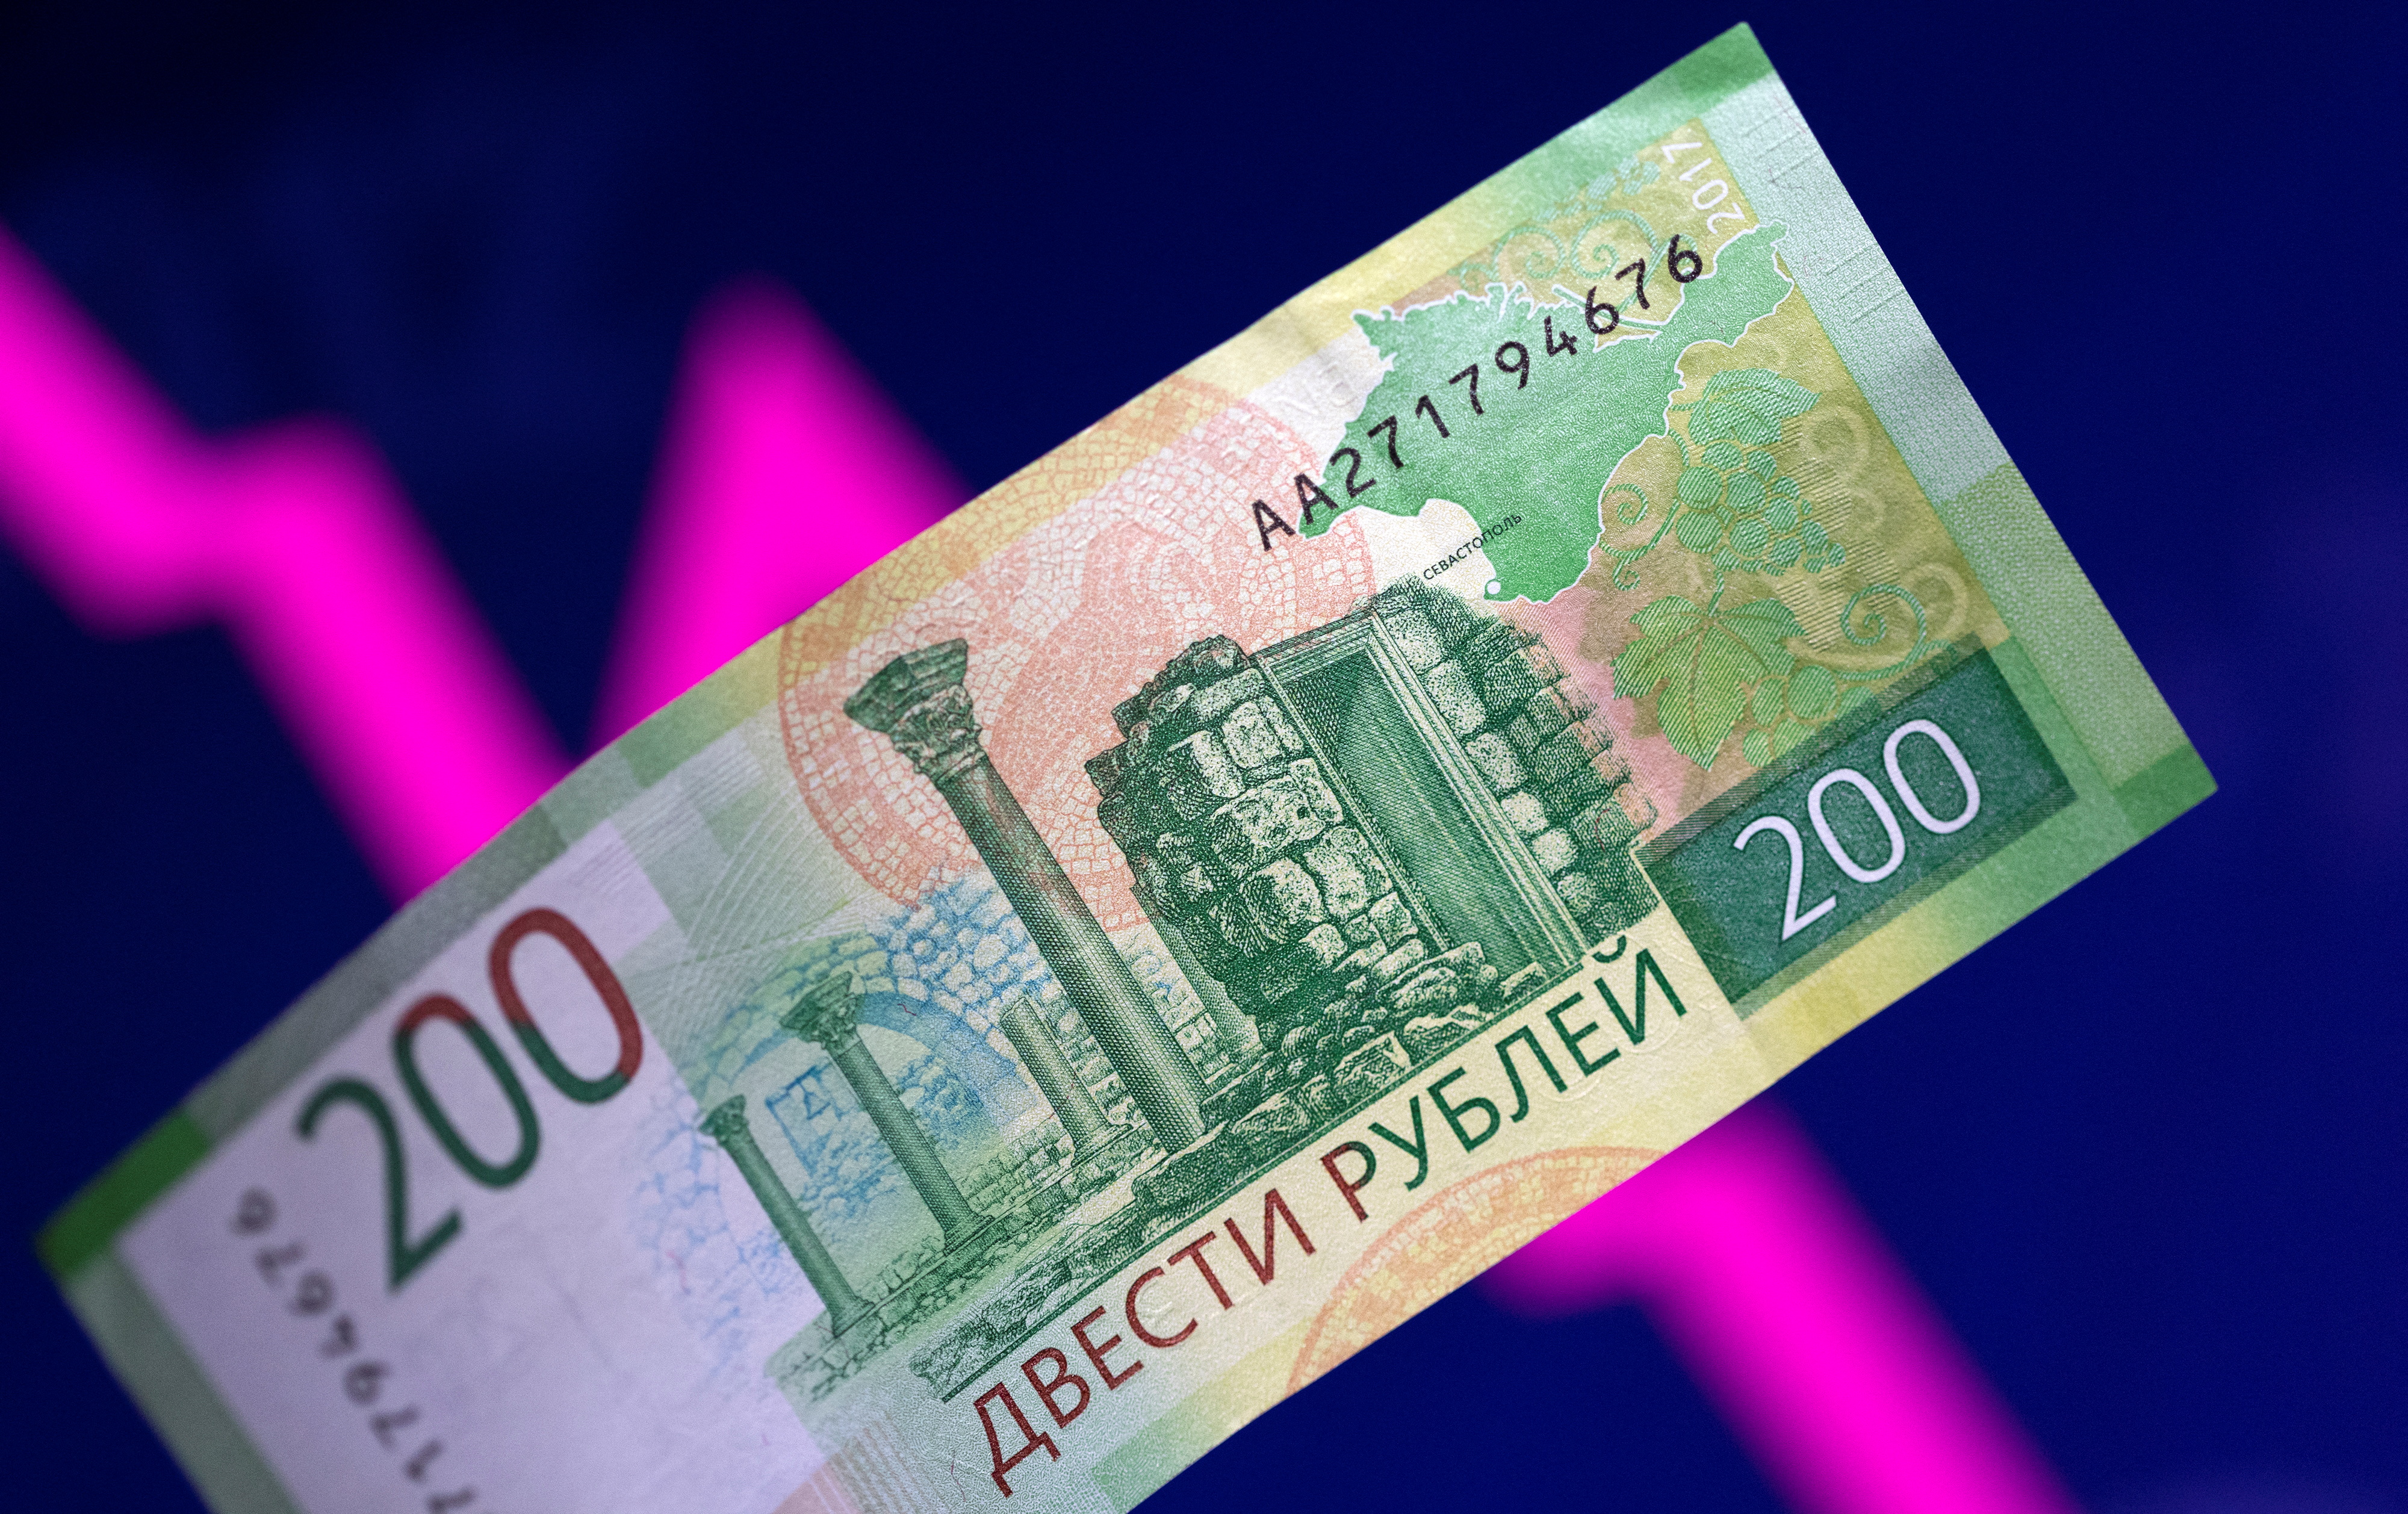 La ilustración muestra un billete de rublo ruso y un gráfico de flecha descendente